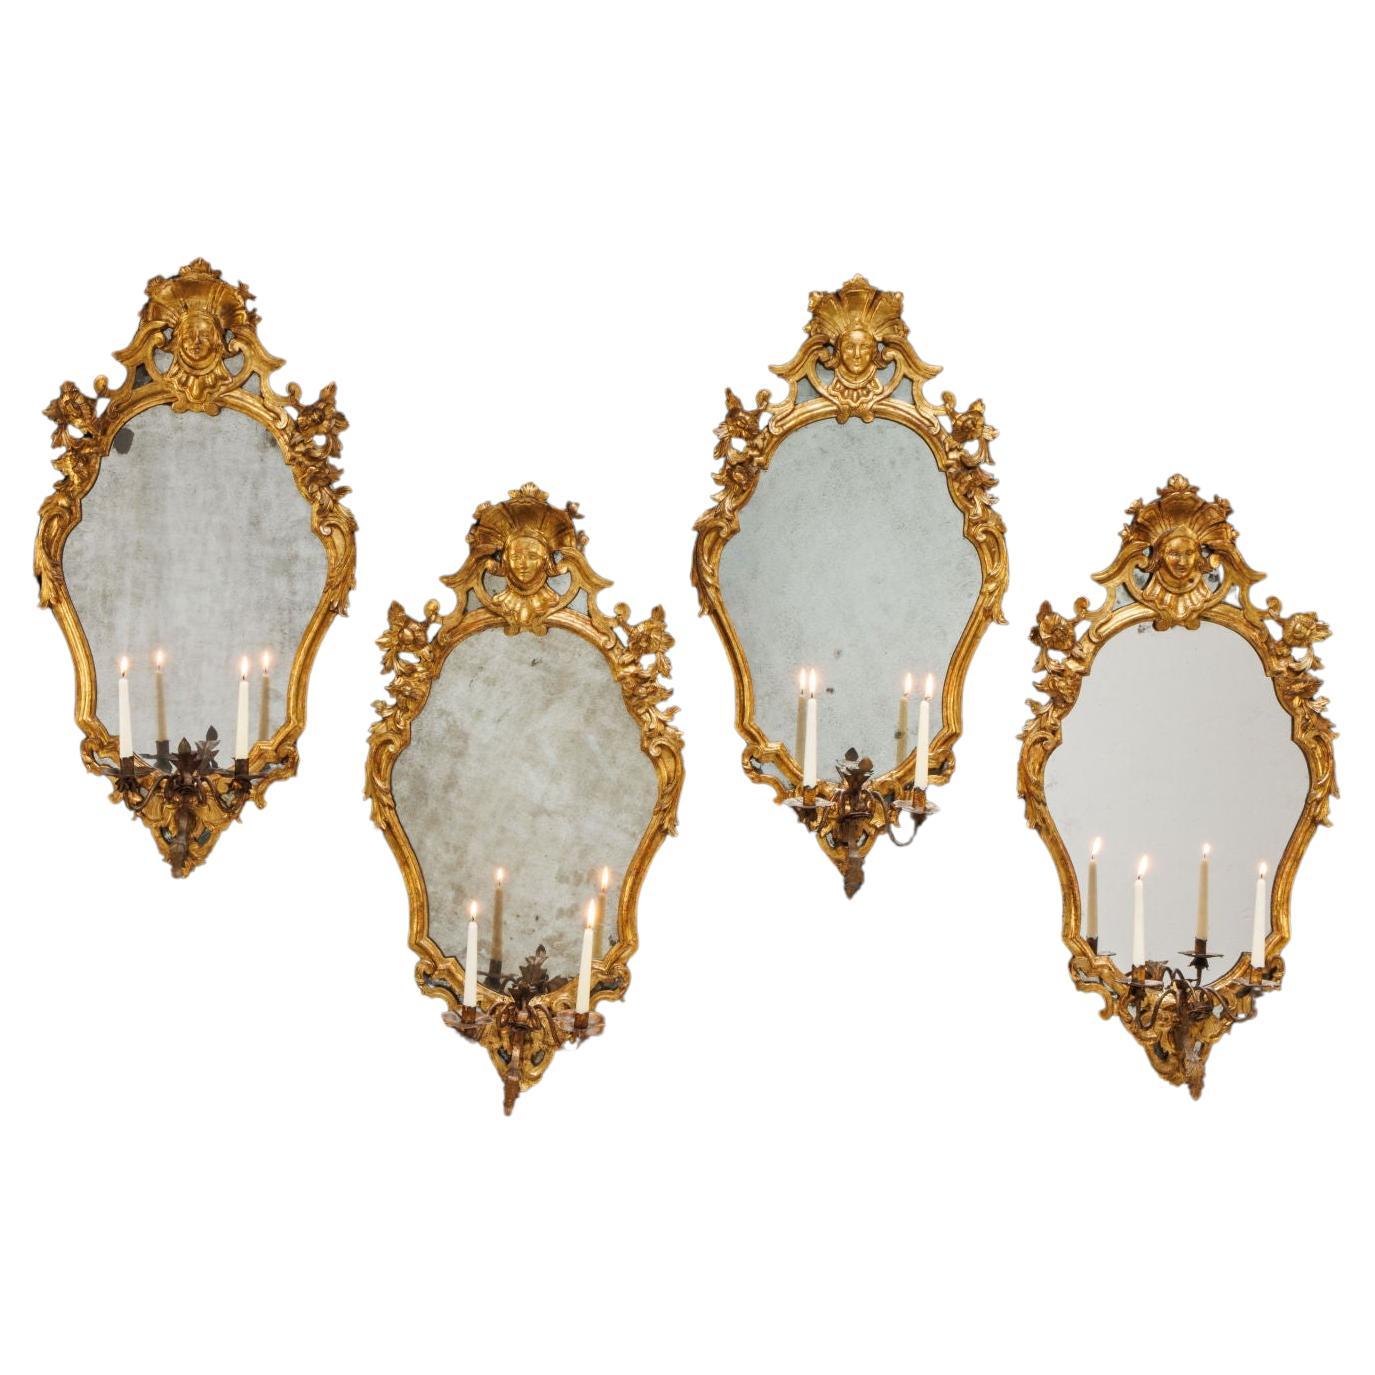 Gruppe von vier Spiegeln. Toskana, erstes Viertel des 18. Jahrhunderts